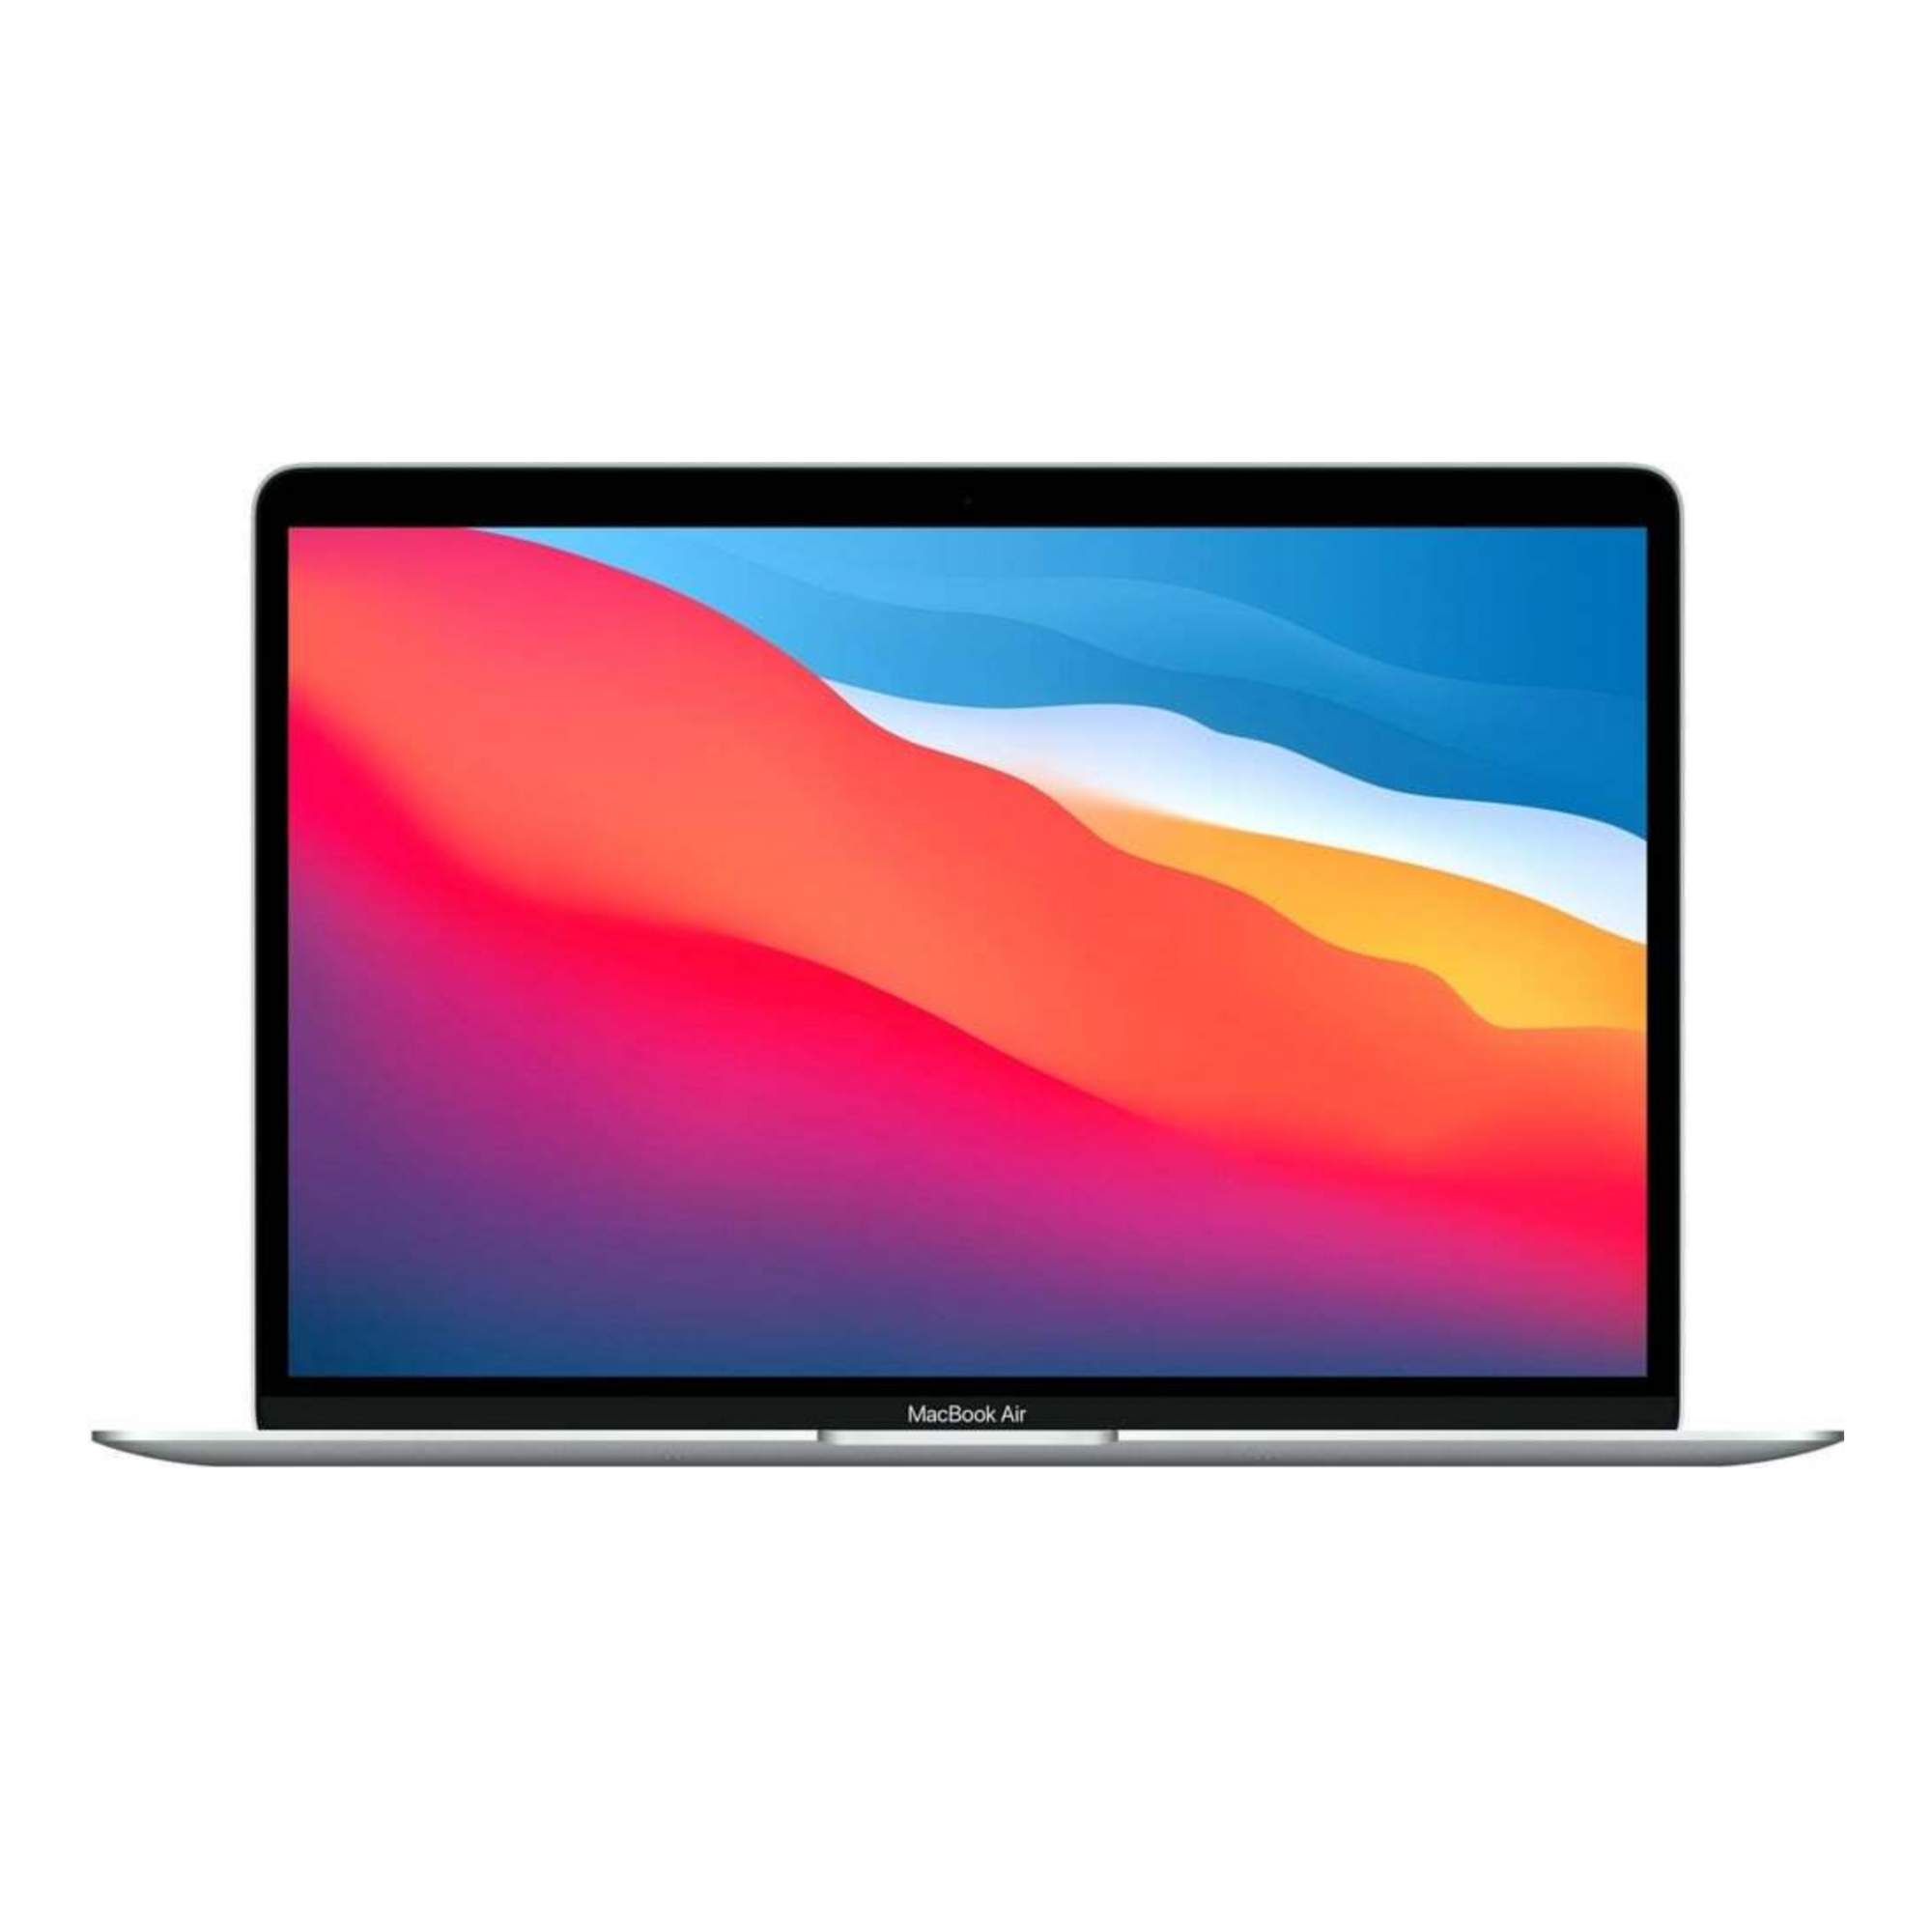 Ноутбук Apple Macbook Air M1 256 Гб 13.3", MGN93SA/A, Silver, купить в Москве, цены в интернет-магазинах на Мегамаркет